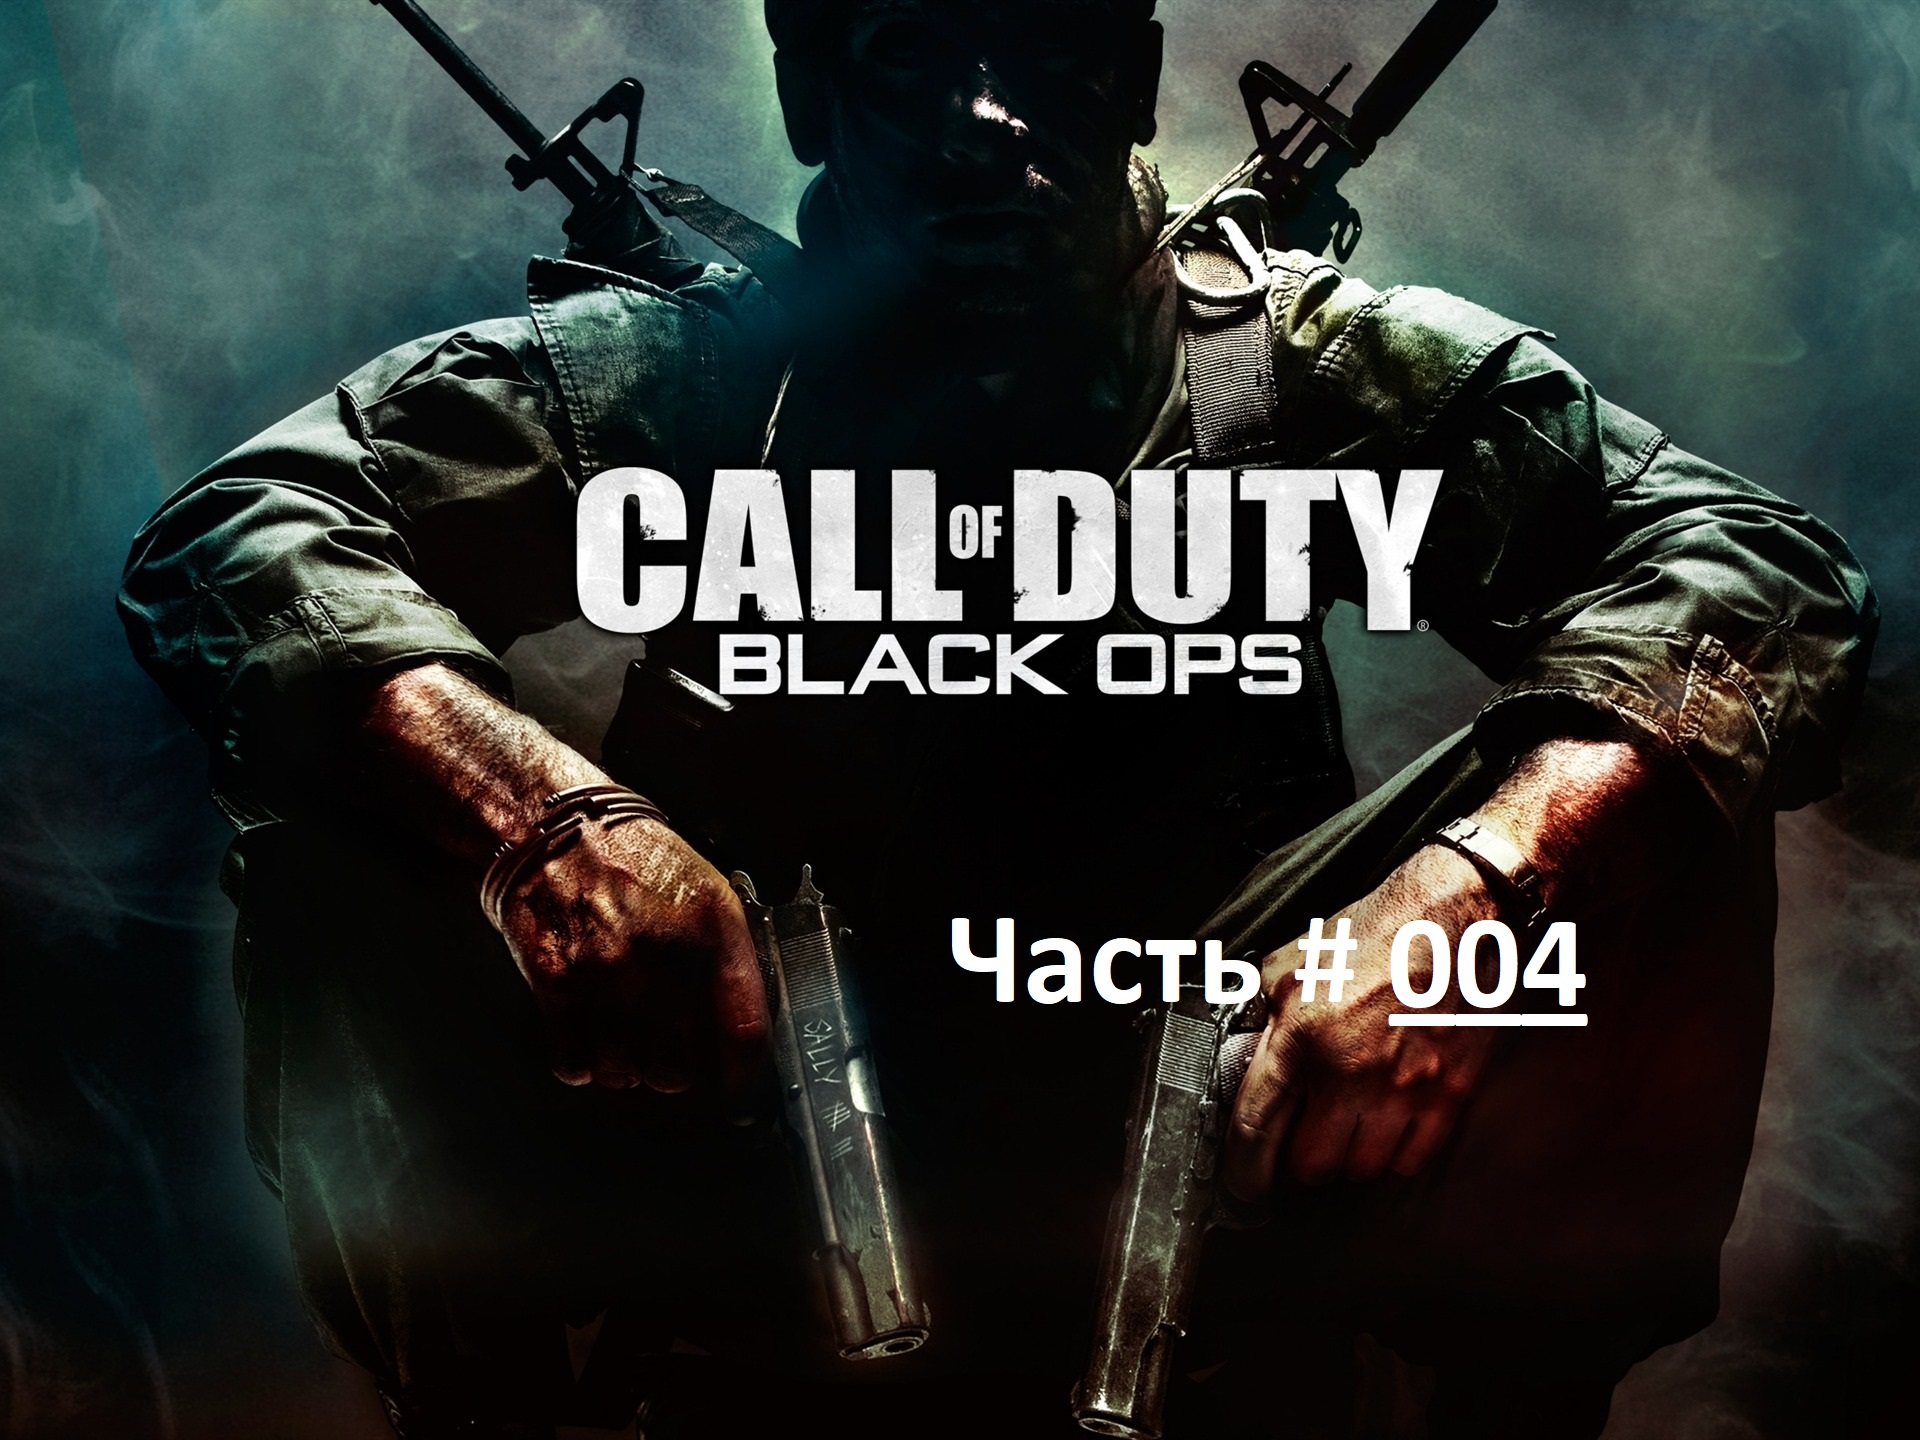 Call of Duty: Black Ops. Прохождение легендарной игры. Часть 4 / "Морпехи" Вьетнам 1968